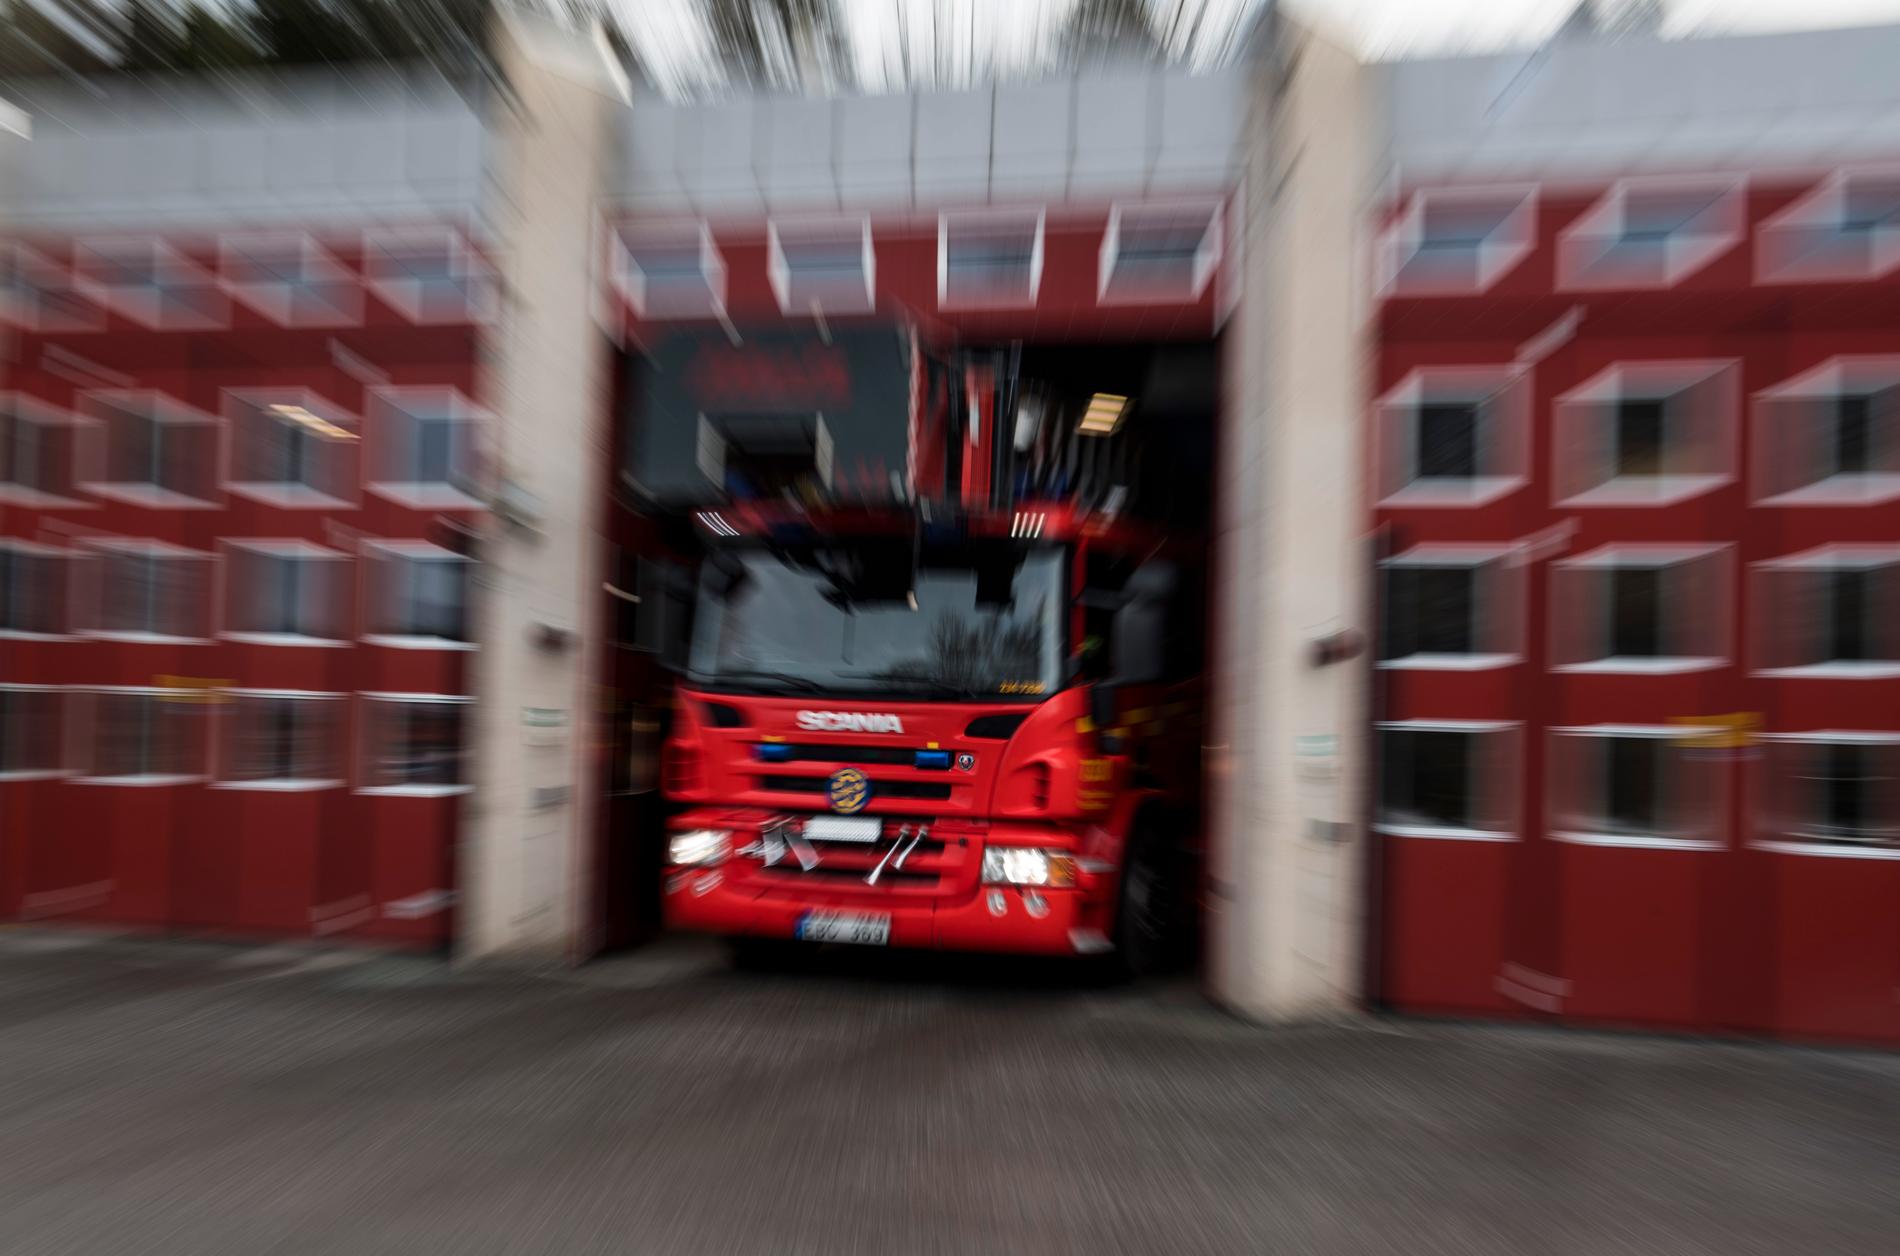 En brand bröt ut i en lägenhet i Mjölby efter det att en smäll hörts. Arkivbild.